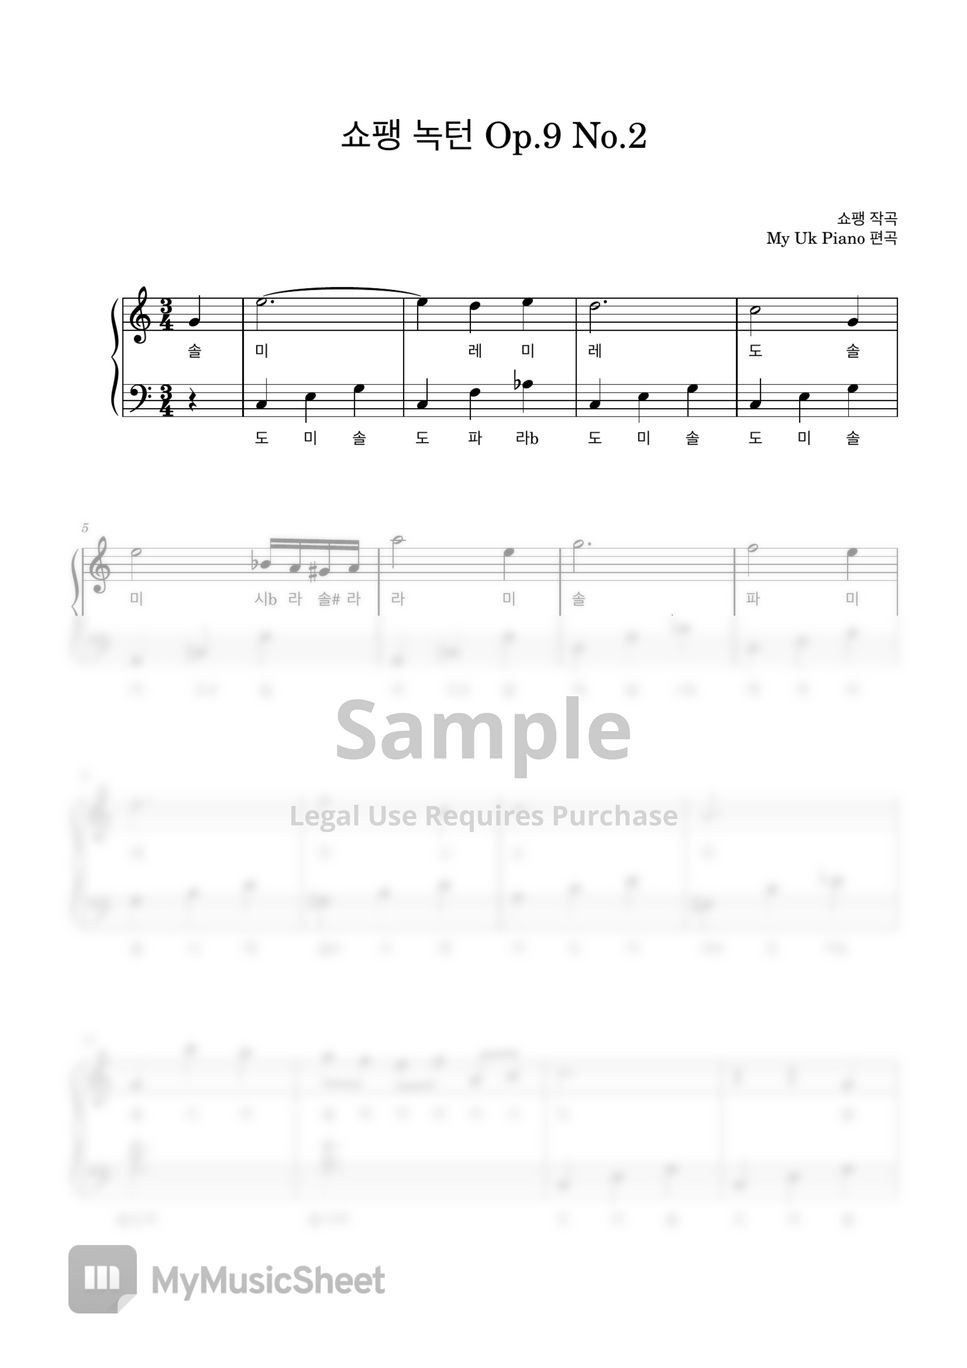 쇼팽 - 쇼팽 녹턴 Op.9 No.2 (기초악보) (매우쉬운 계이름악보) by My Uk Piano